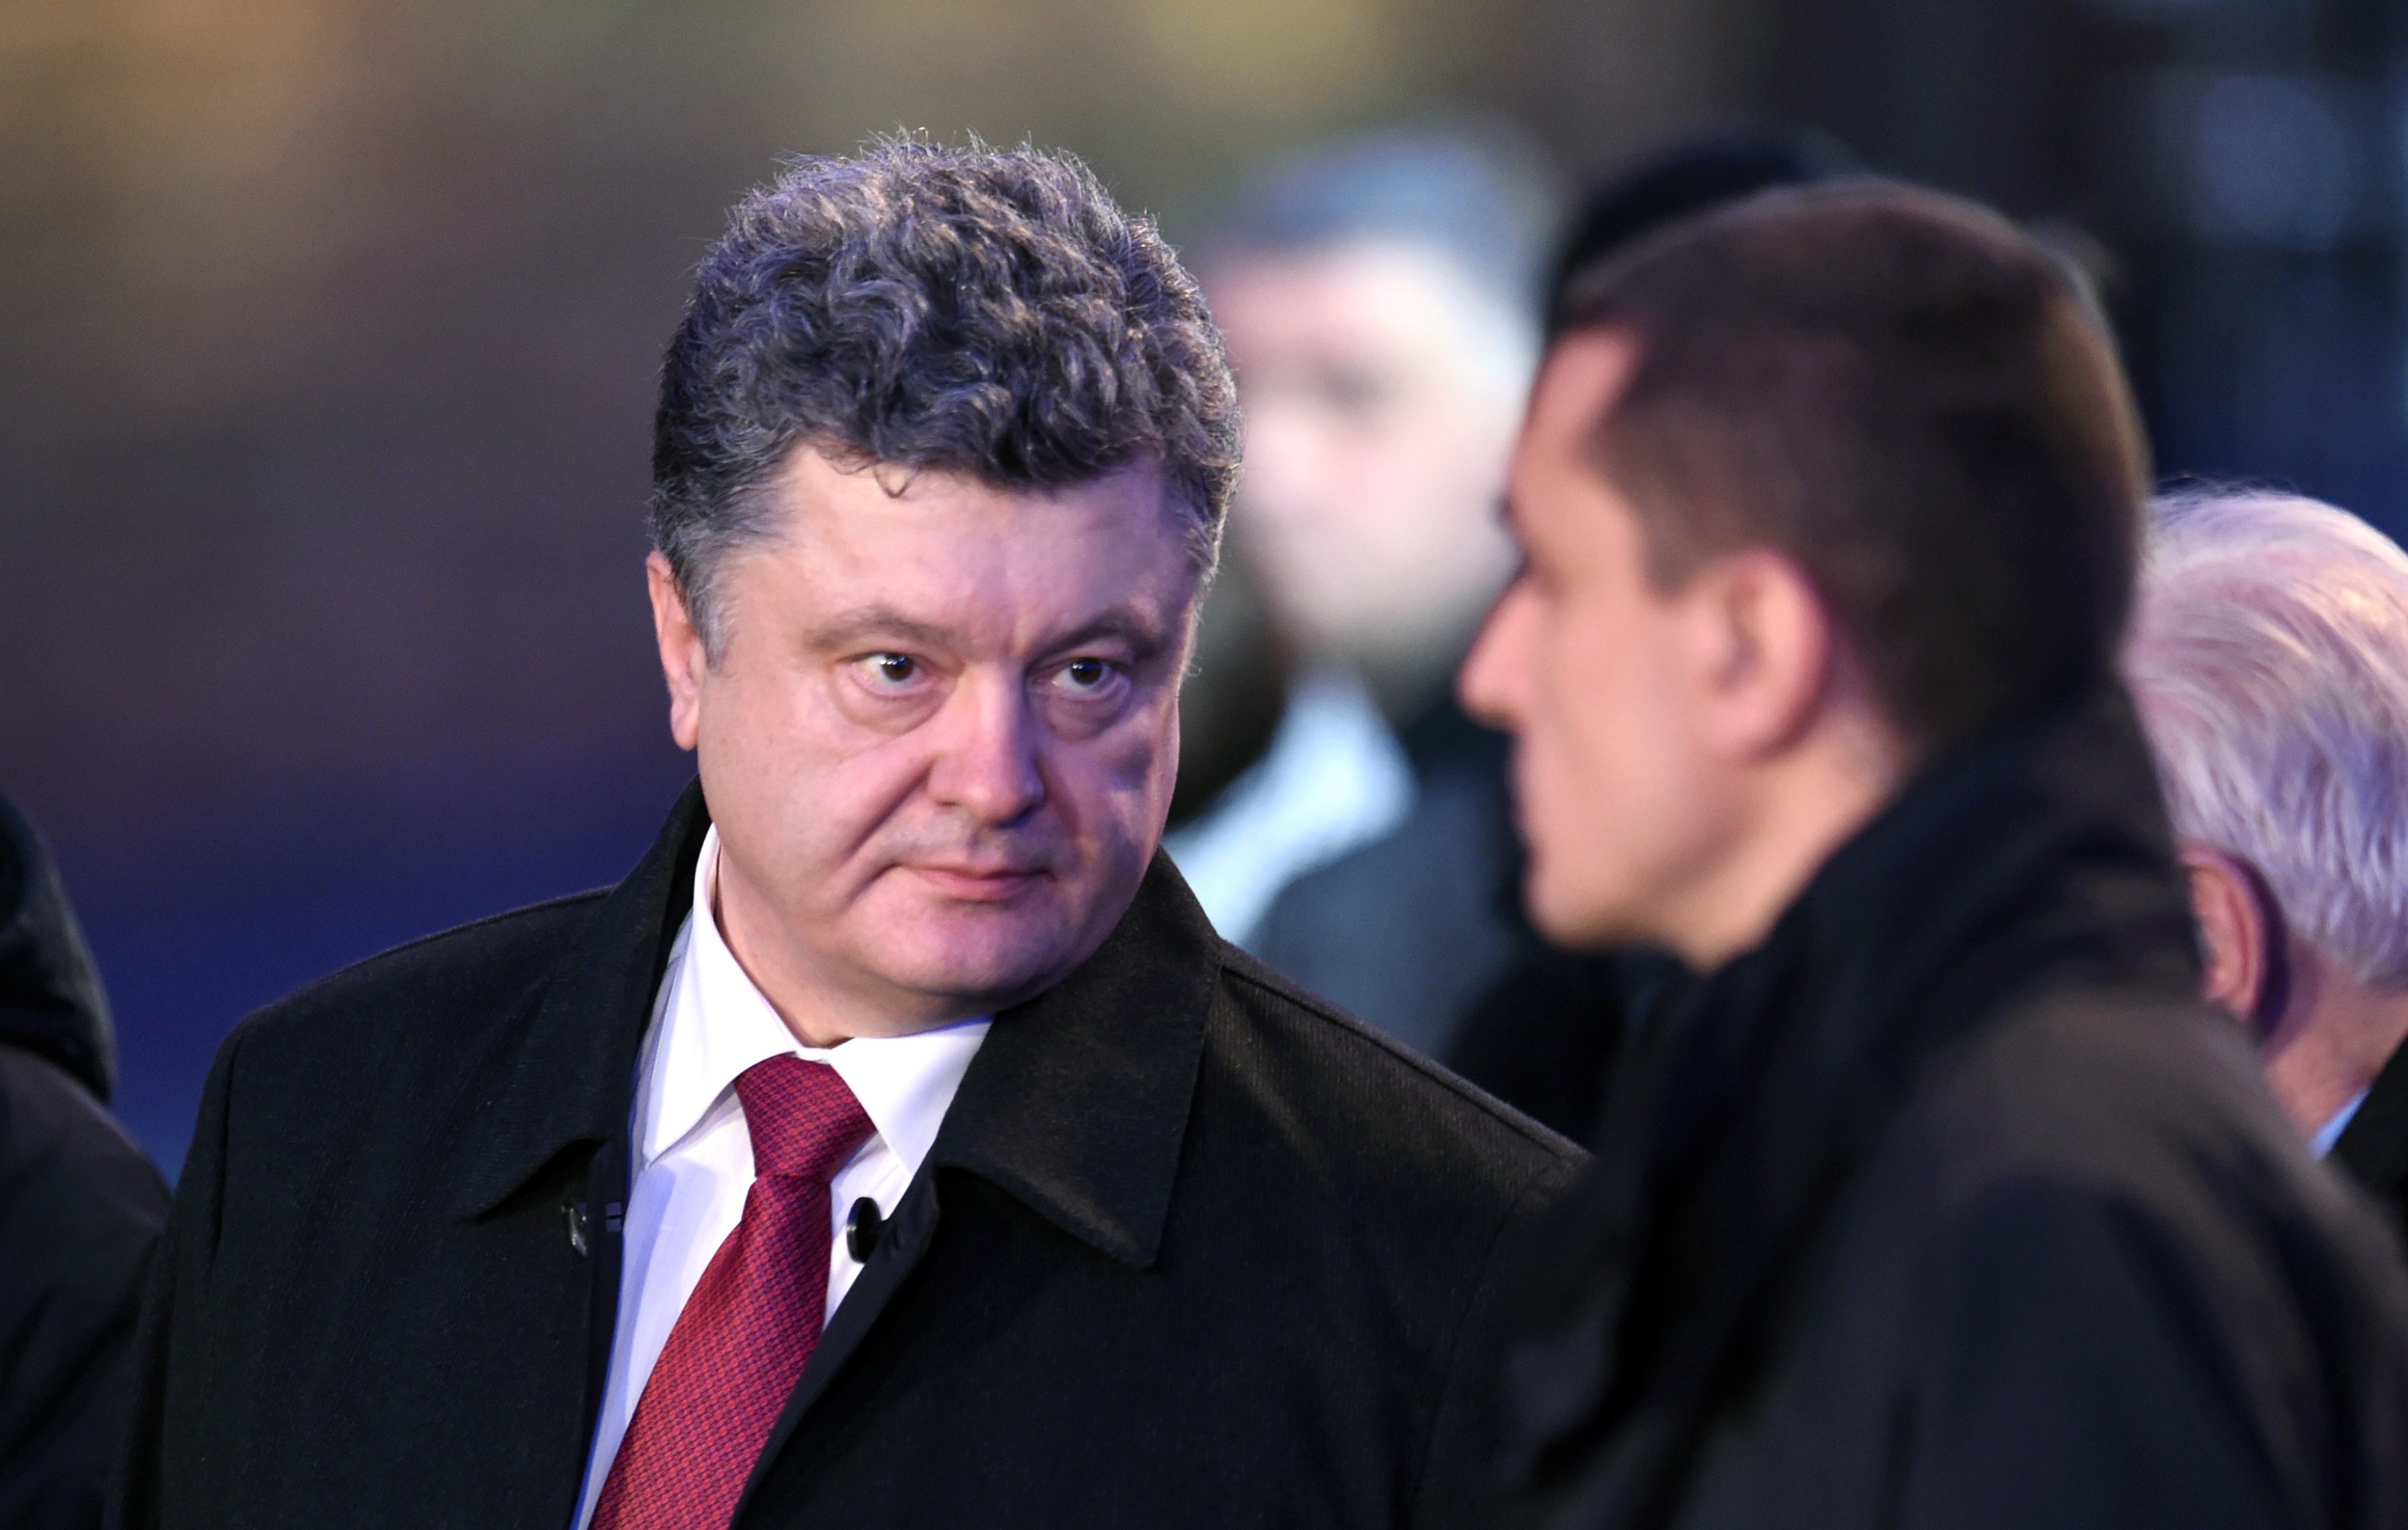 Poroschenko verweigert Lügendetektor-Test – Verhinderte er Korruptionsermittlungen gegen Biden-Sohn?